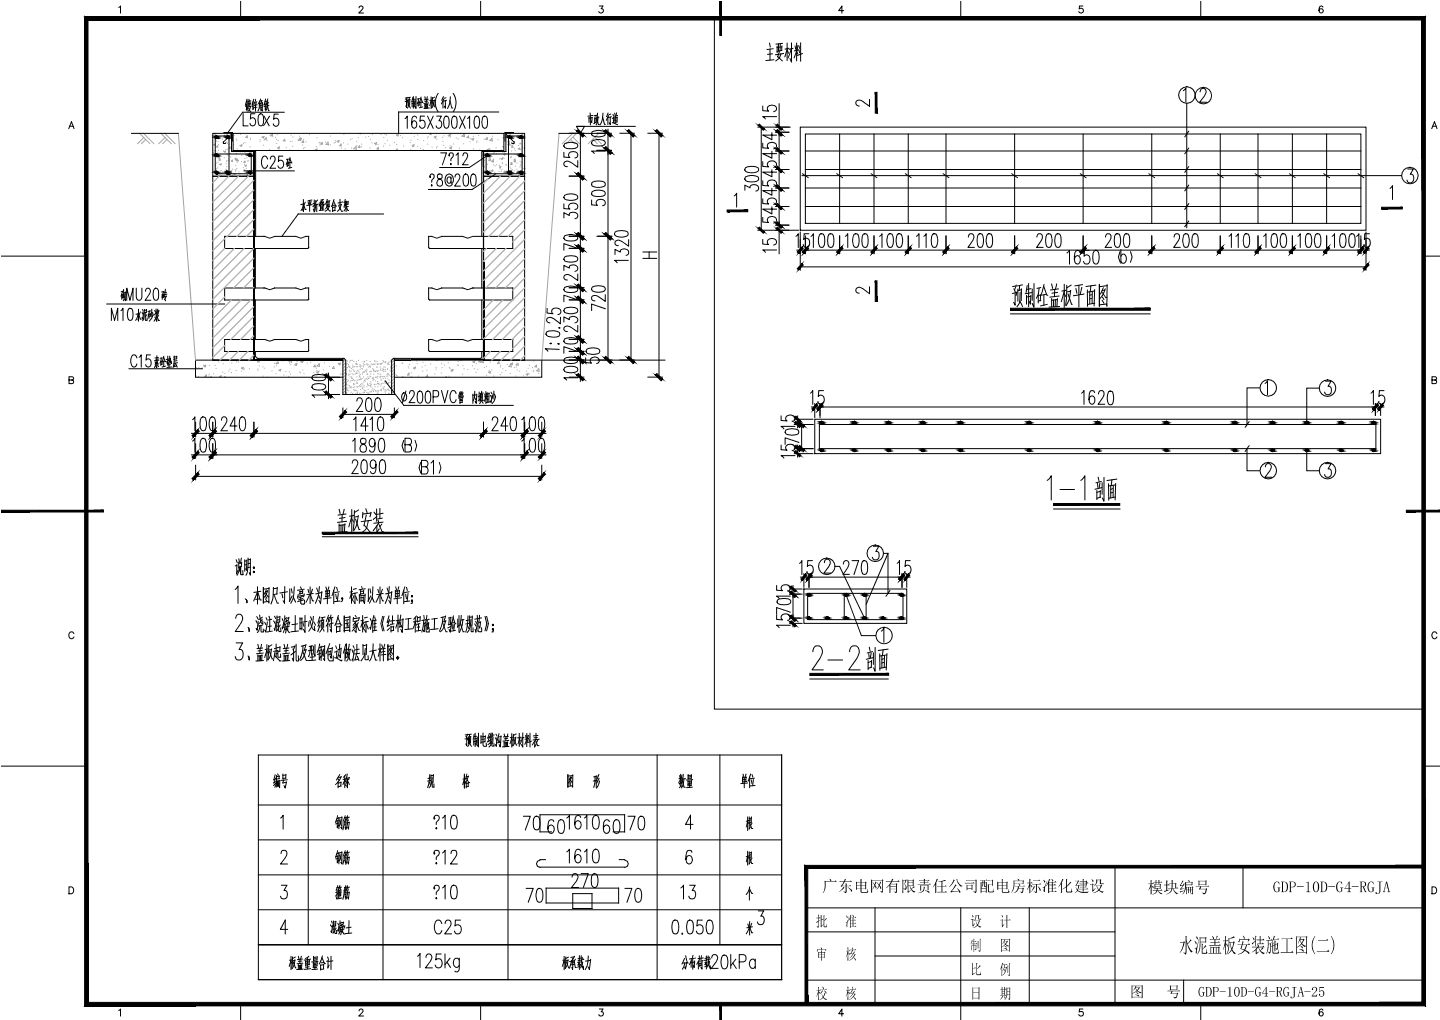 GDP-10D-G4-RGJA-25水泥盖板安装施工图